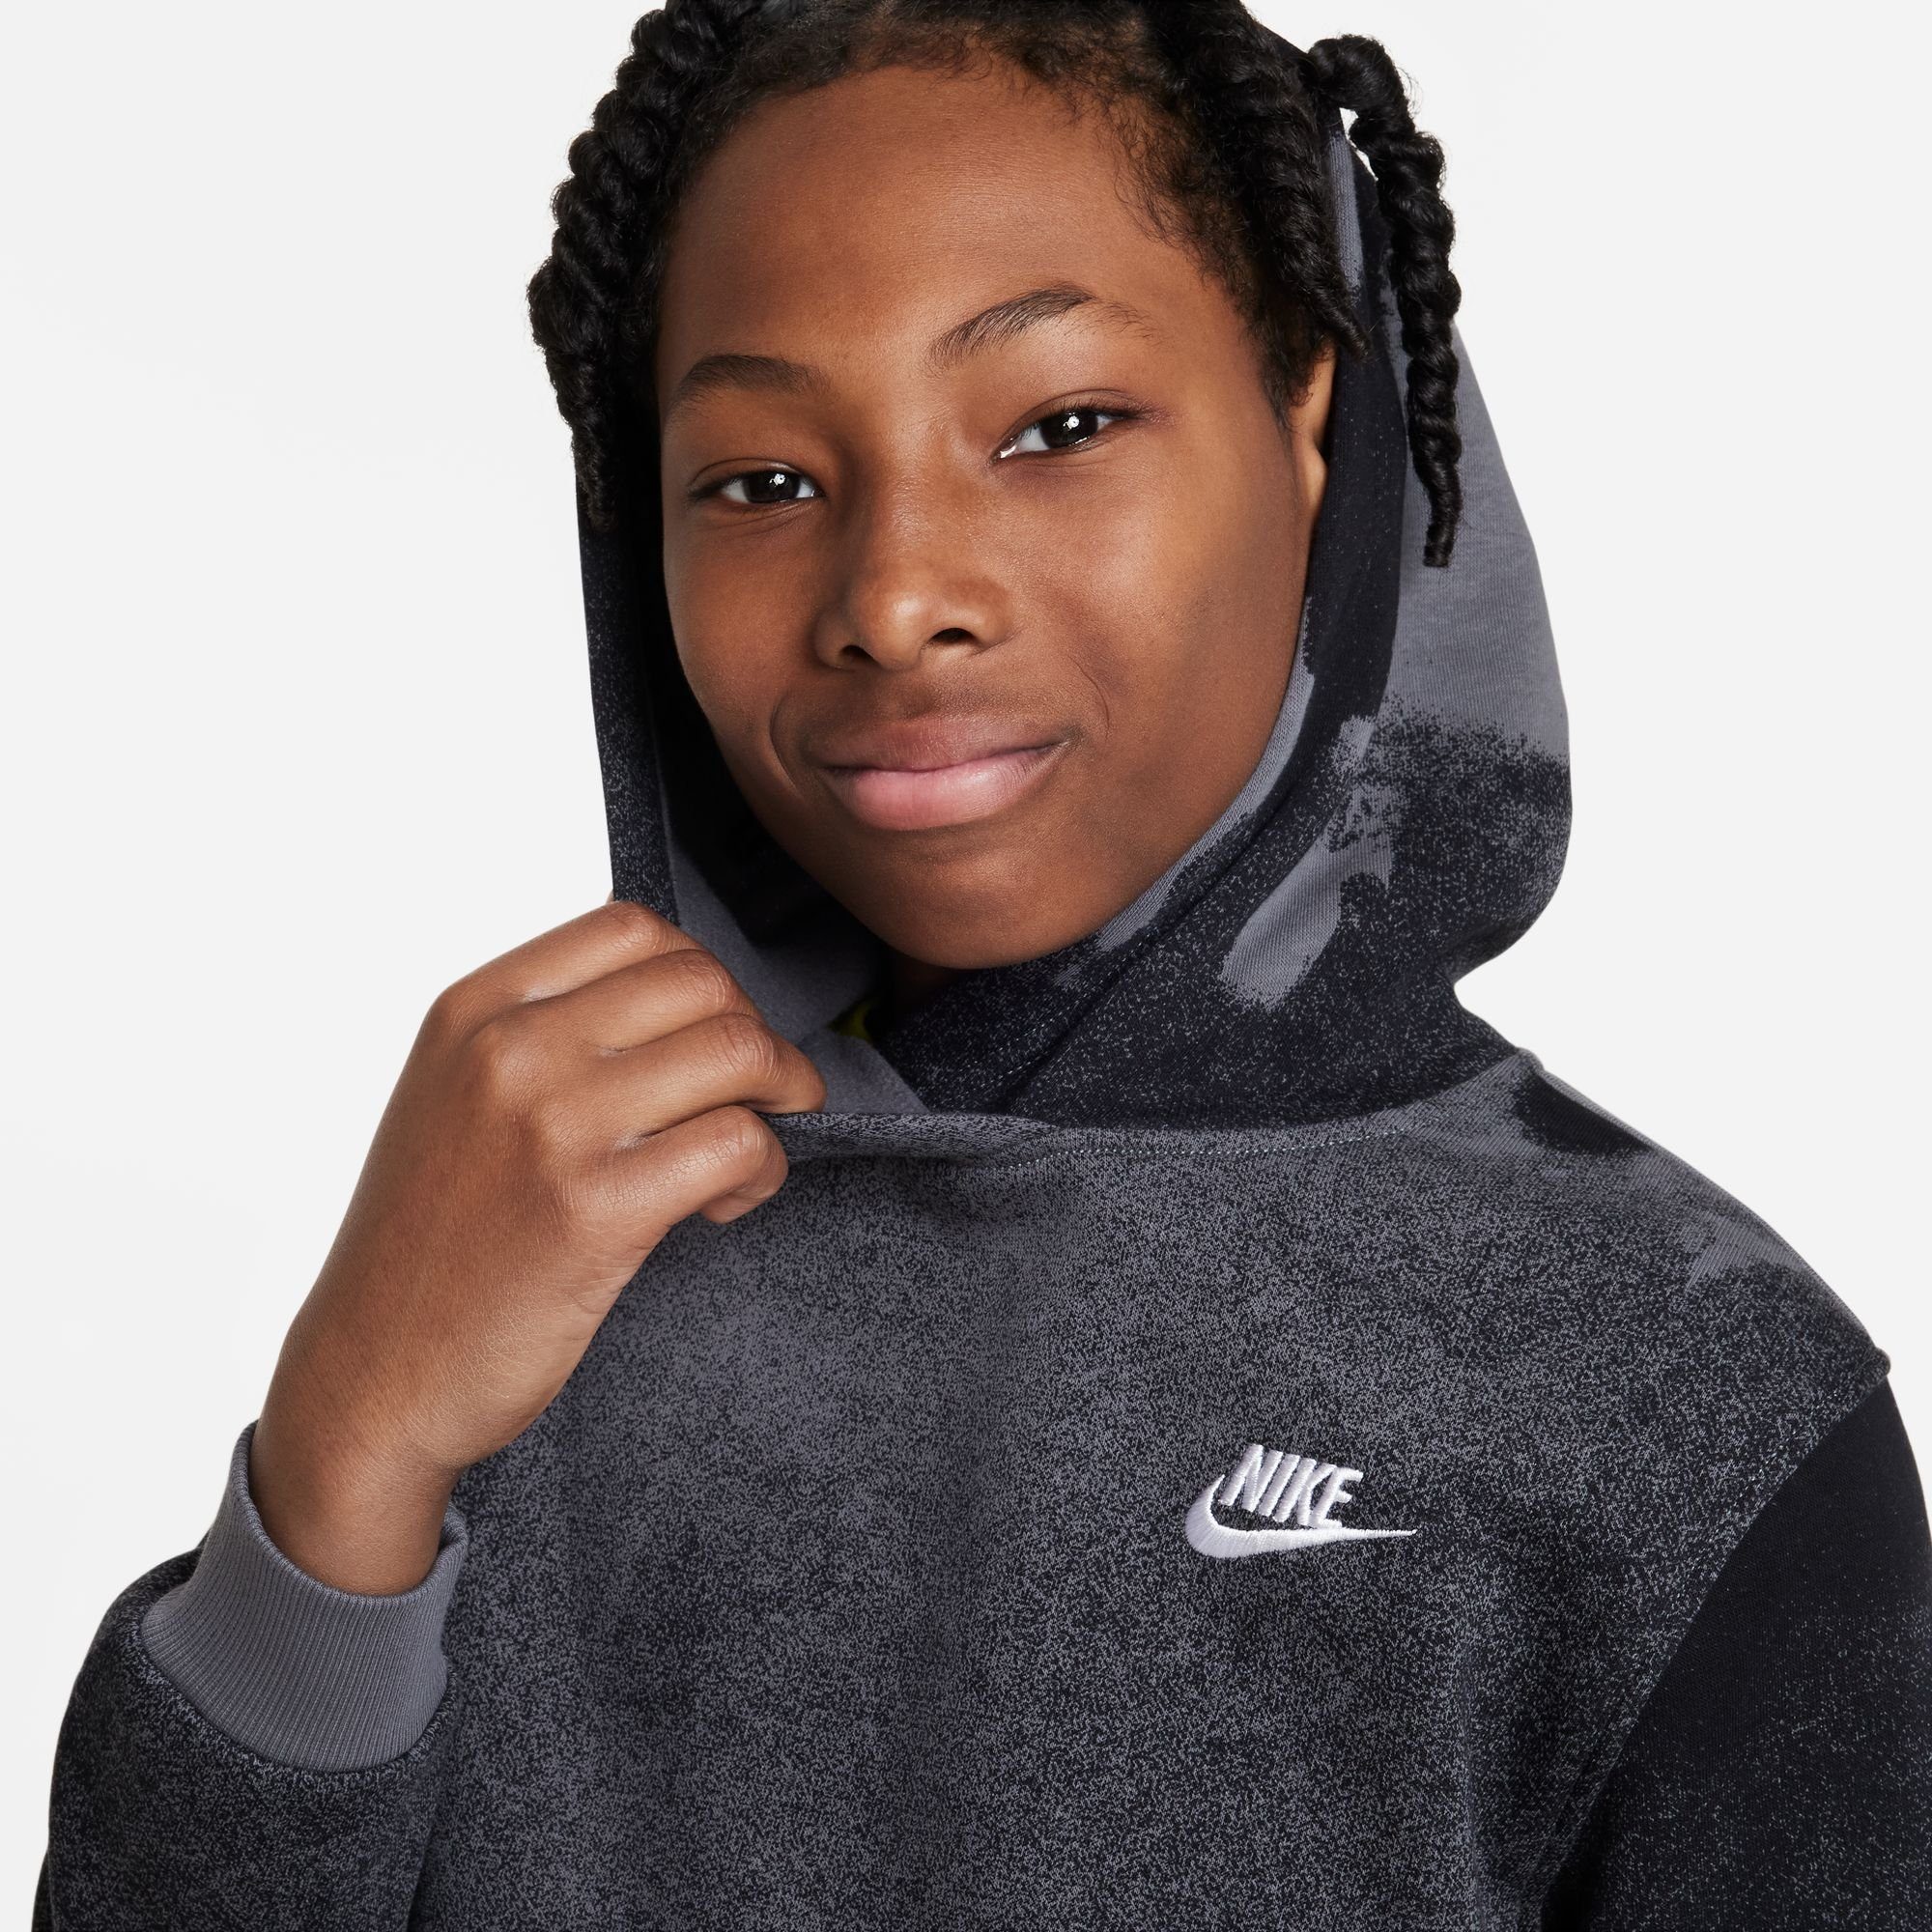 Nike Sportswear Hoodie Club Fleece Big Kids' Pullover Hoodie